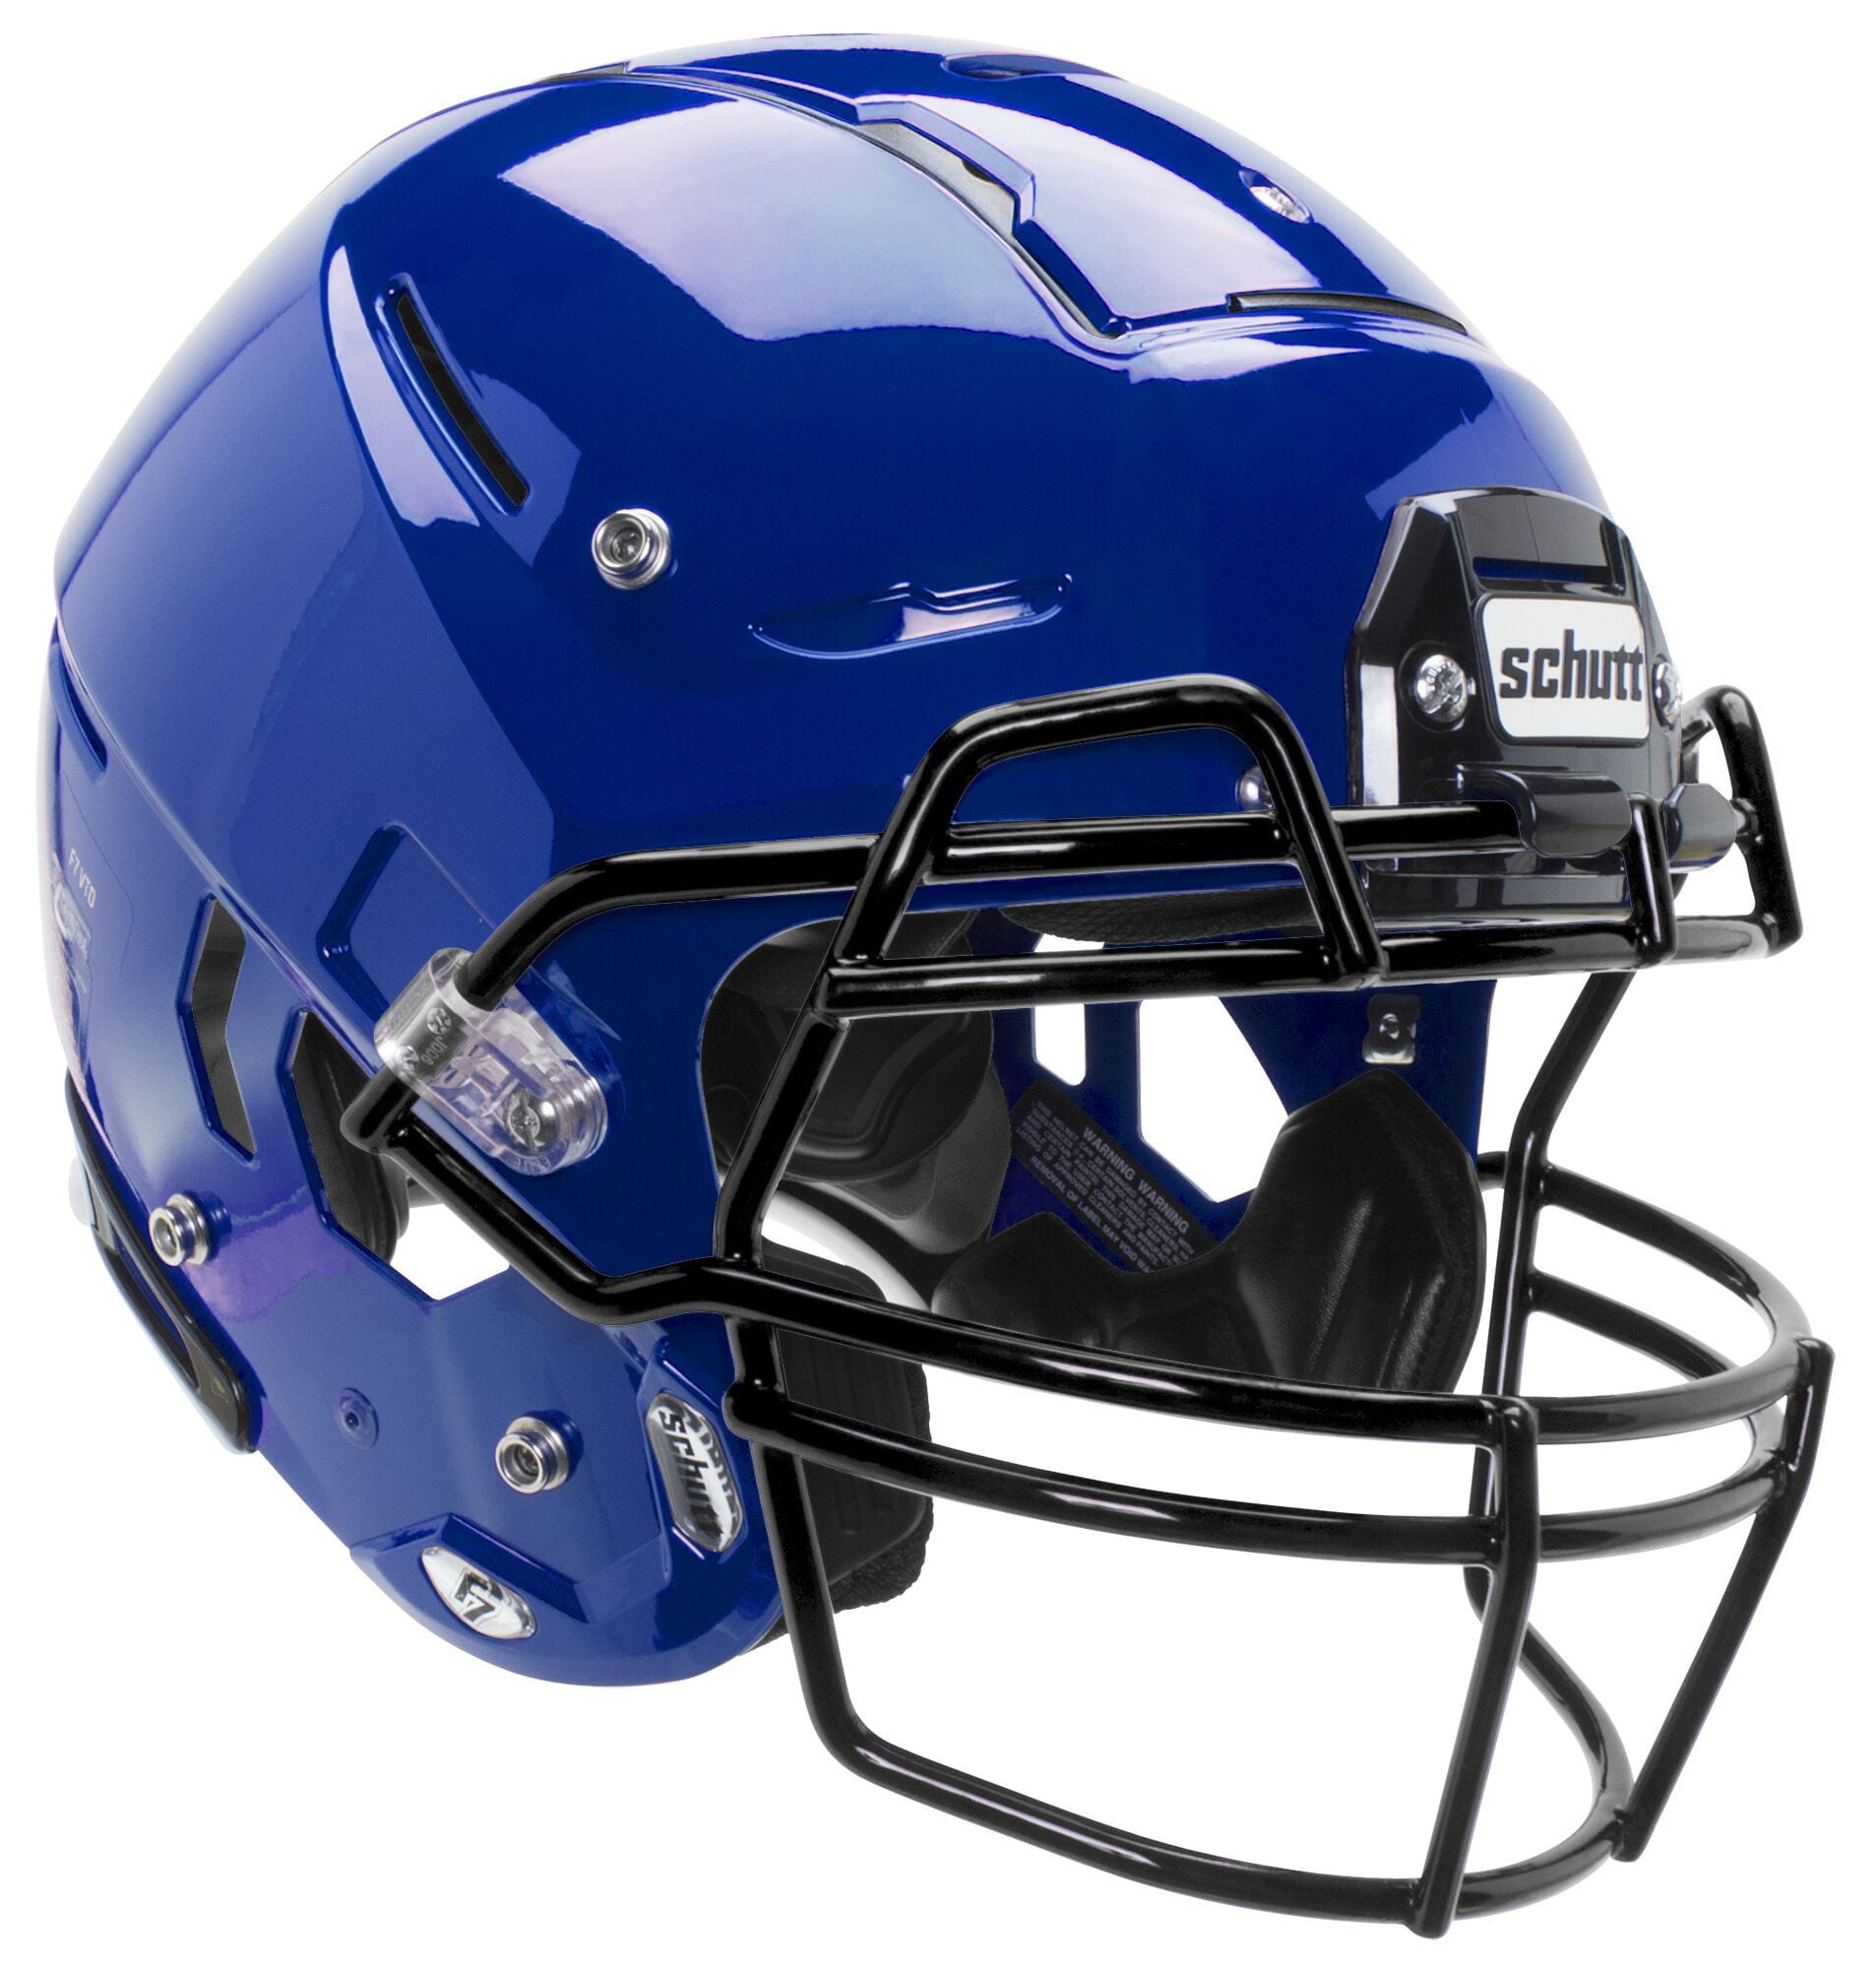 Schutt F7 VTD Adult Football Helmet - Collegiate Package (L, Navy